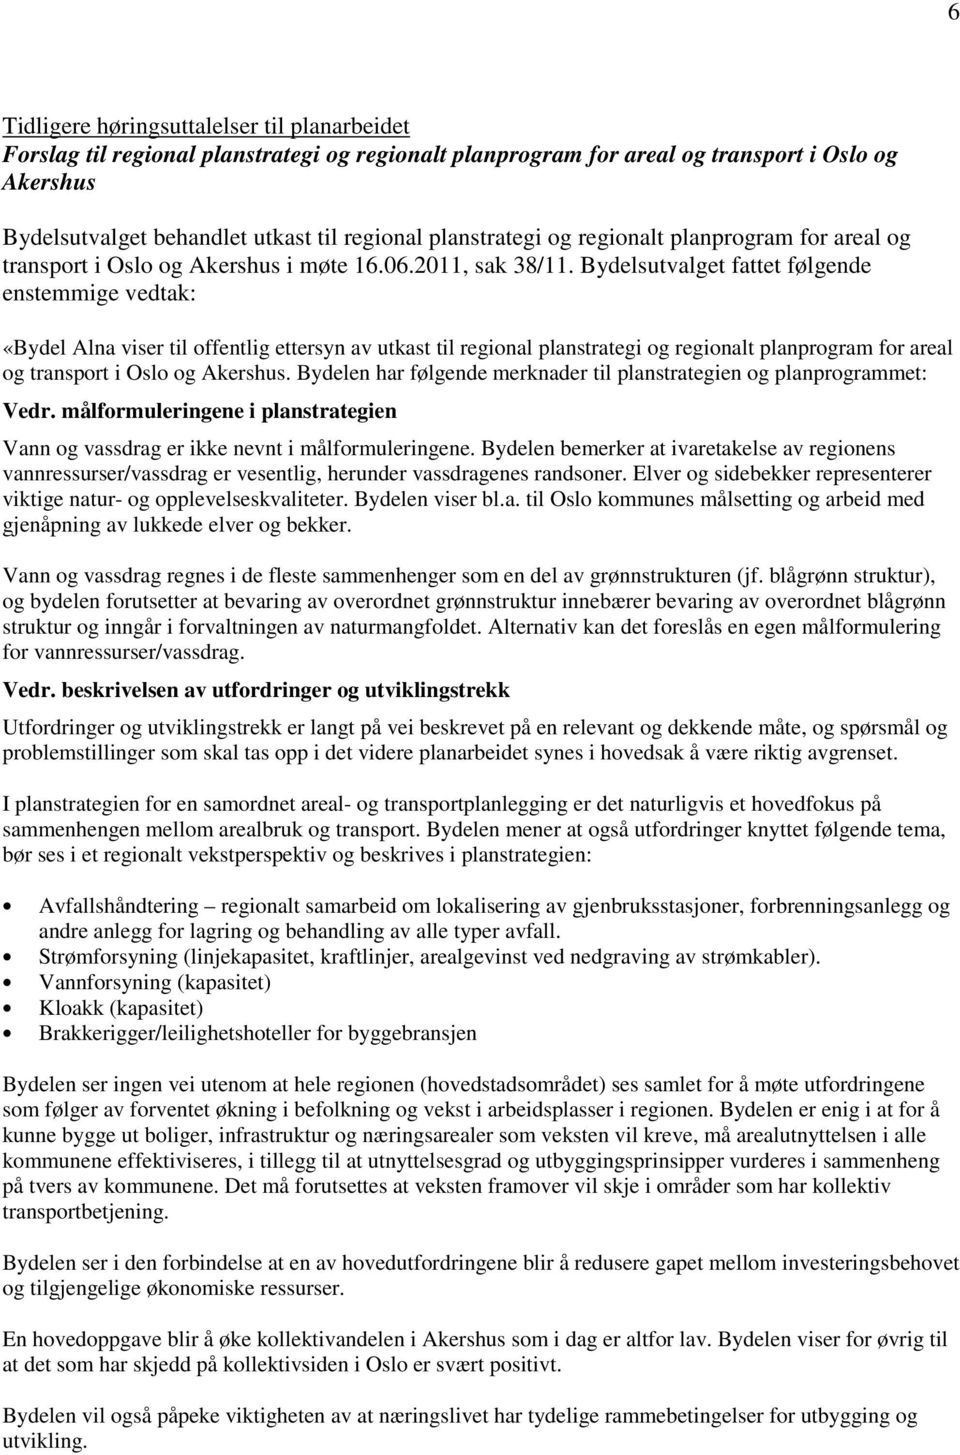 Bydelsutvalget fattet følgende enstemmige vedtak: «Bydel Alna viser til offentlig ettersyn av utkast til regional planstrategi og regionalt planprogram for areal og transport i Oslo og Akershus.